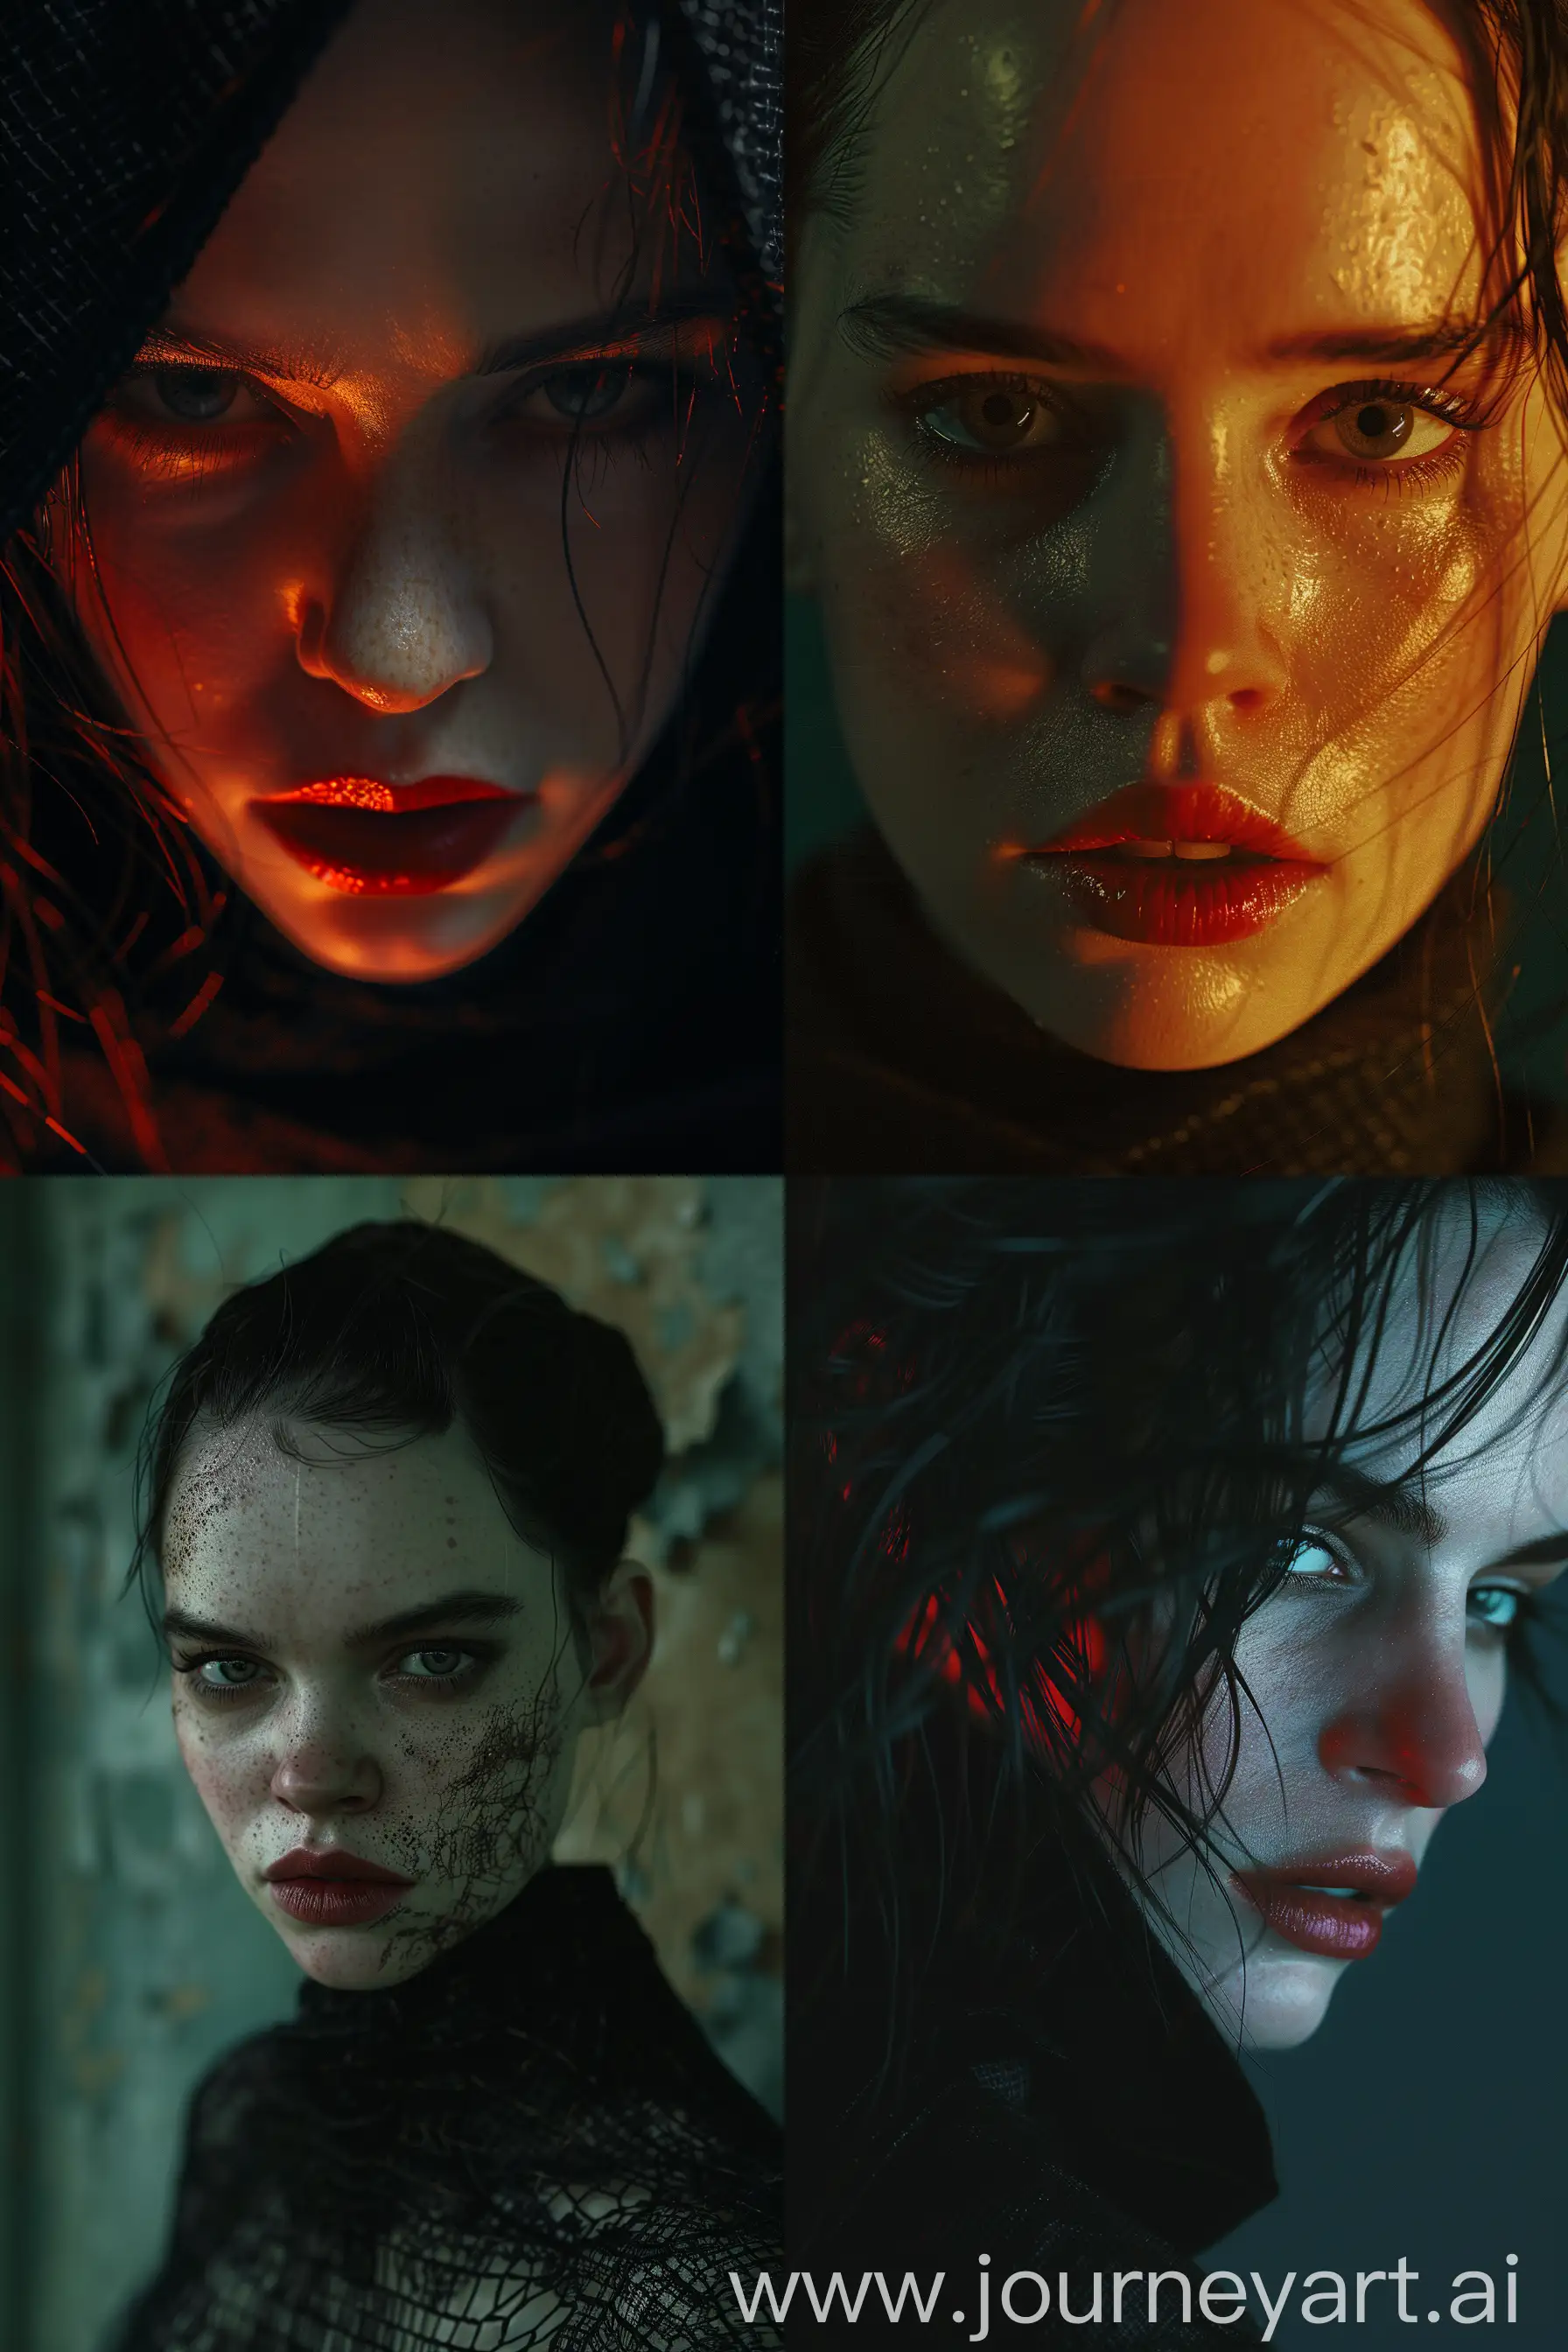 Hyperrealistic-Fashion-Portrait-Rey-Skywalker-as-Selene-in-Underworld-Movie-Style